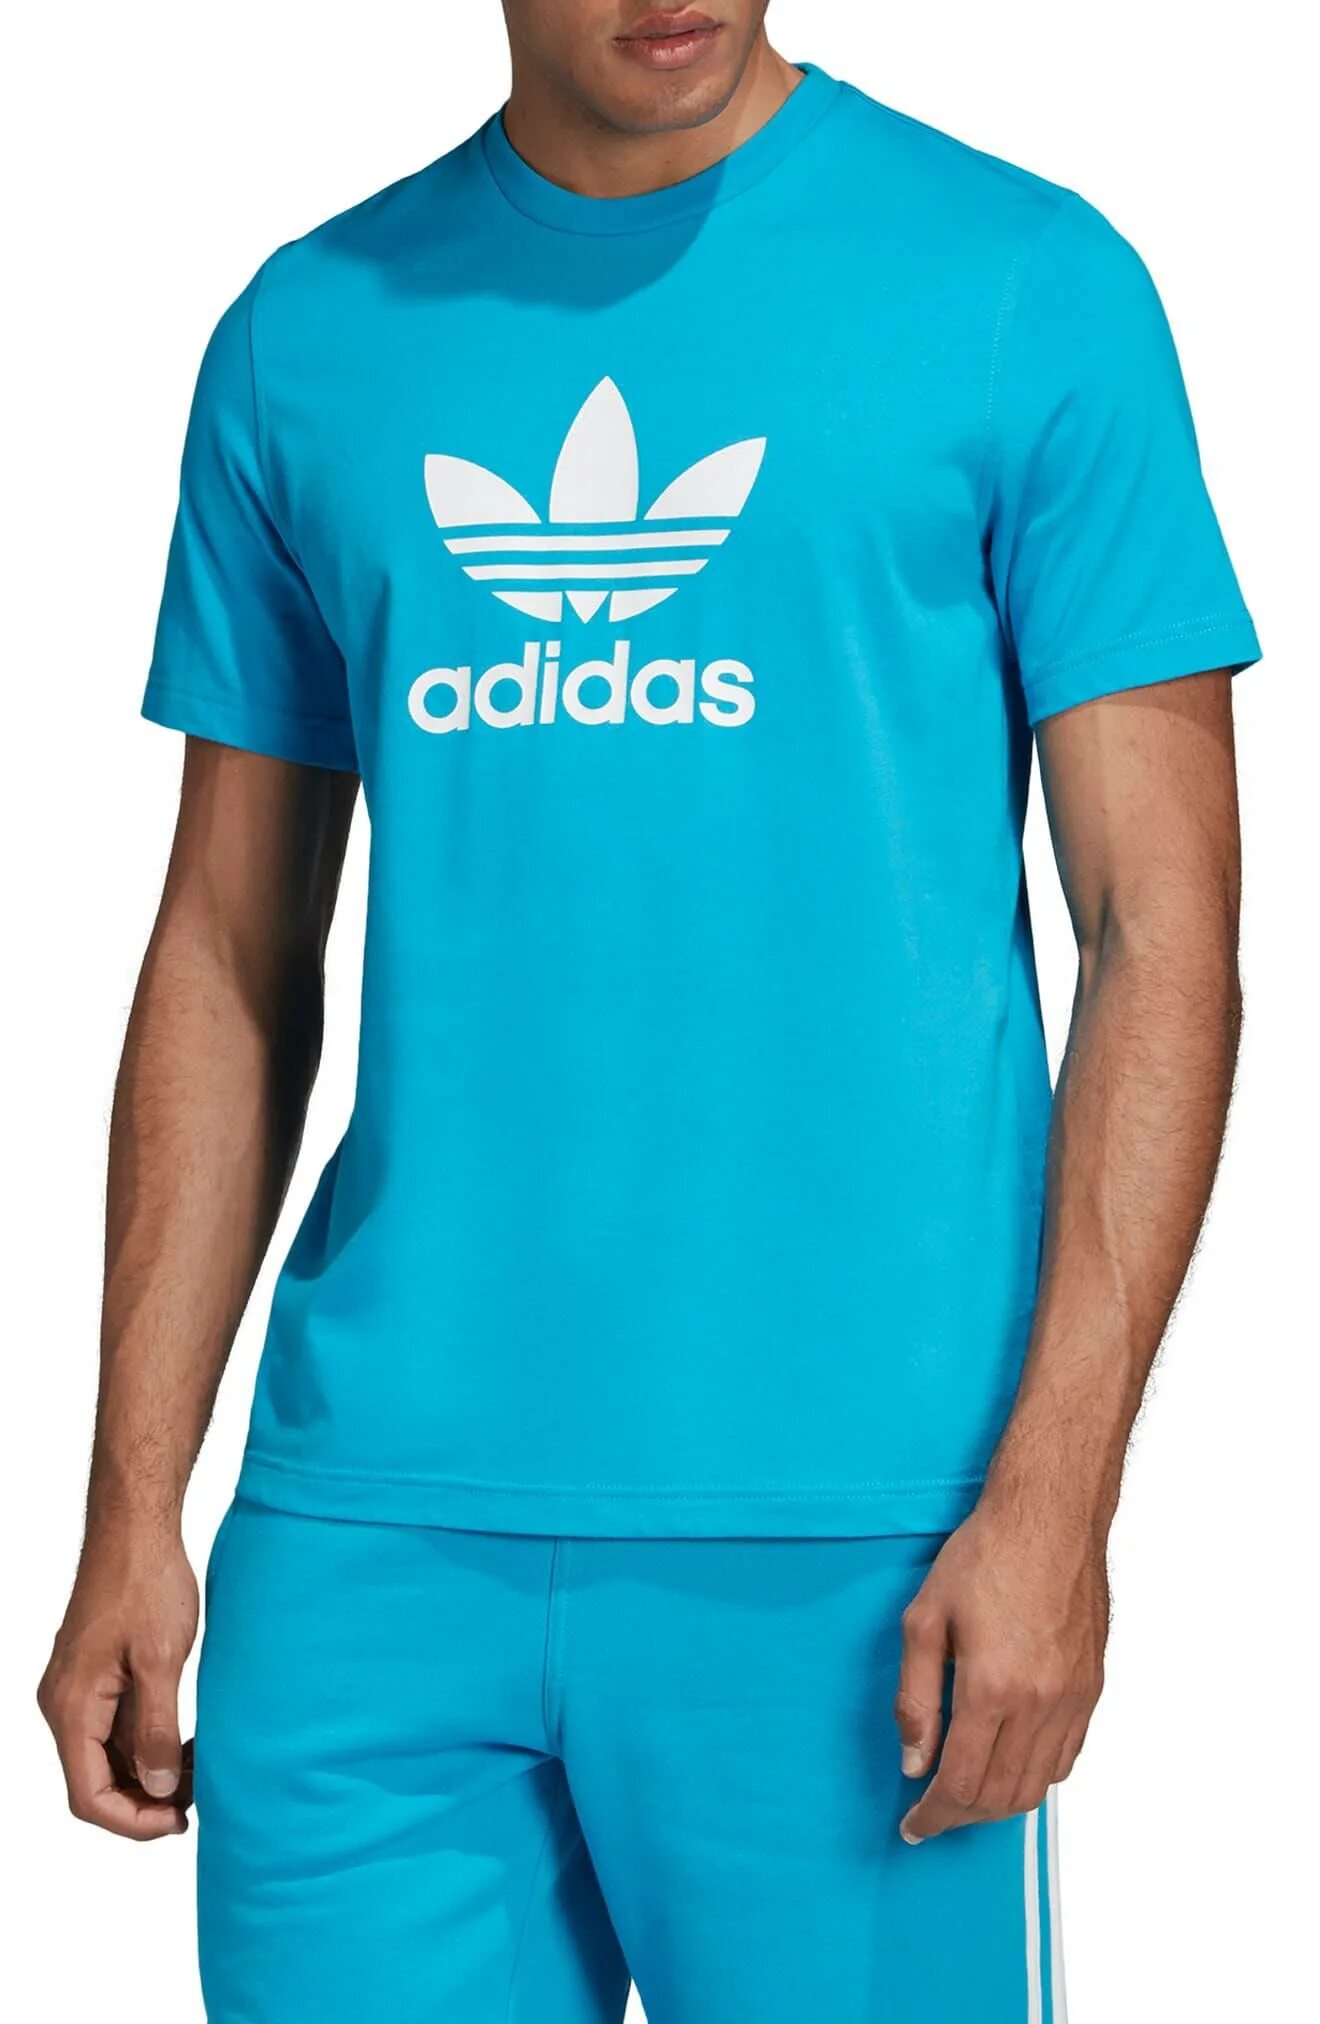 Футболка адидас мужская оригинал купить. Adidas t Shirt Trefoil. Футболка адидас оригинал голубая. Blue adidas Originals Shirt Collab. Футболка адидас мужская синяя.